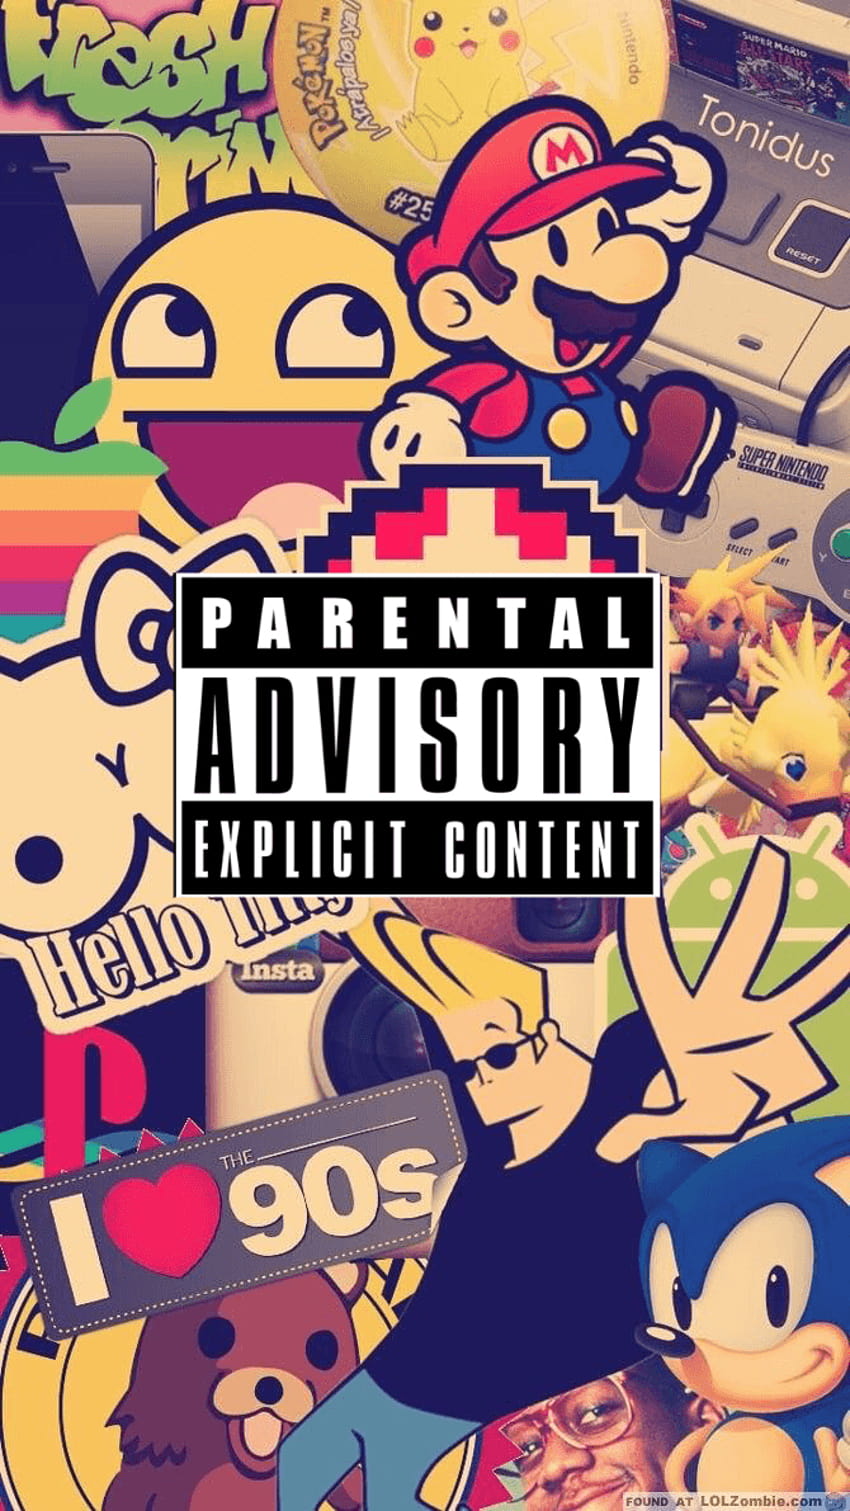 Parental Advisory Explicit Conten, explicit content HD phone wallpaper